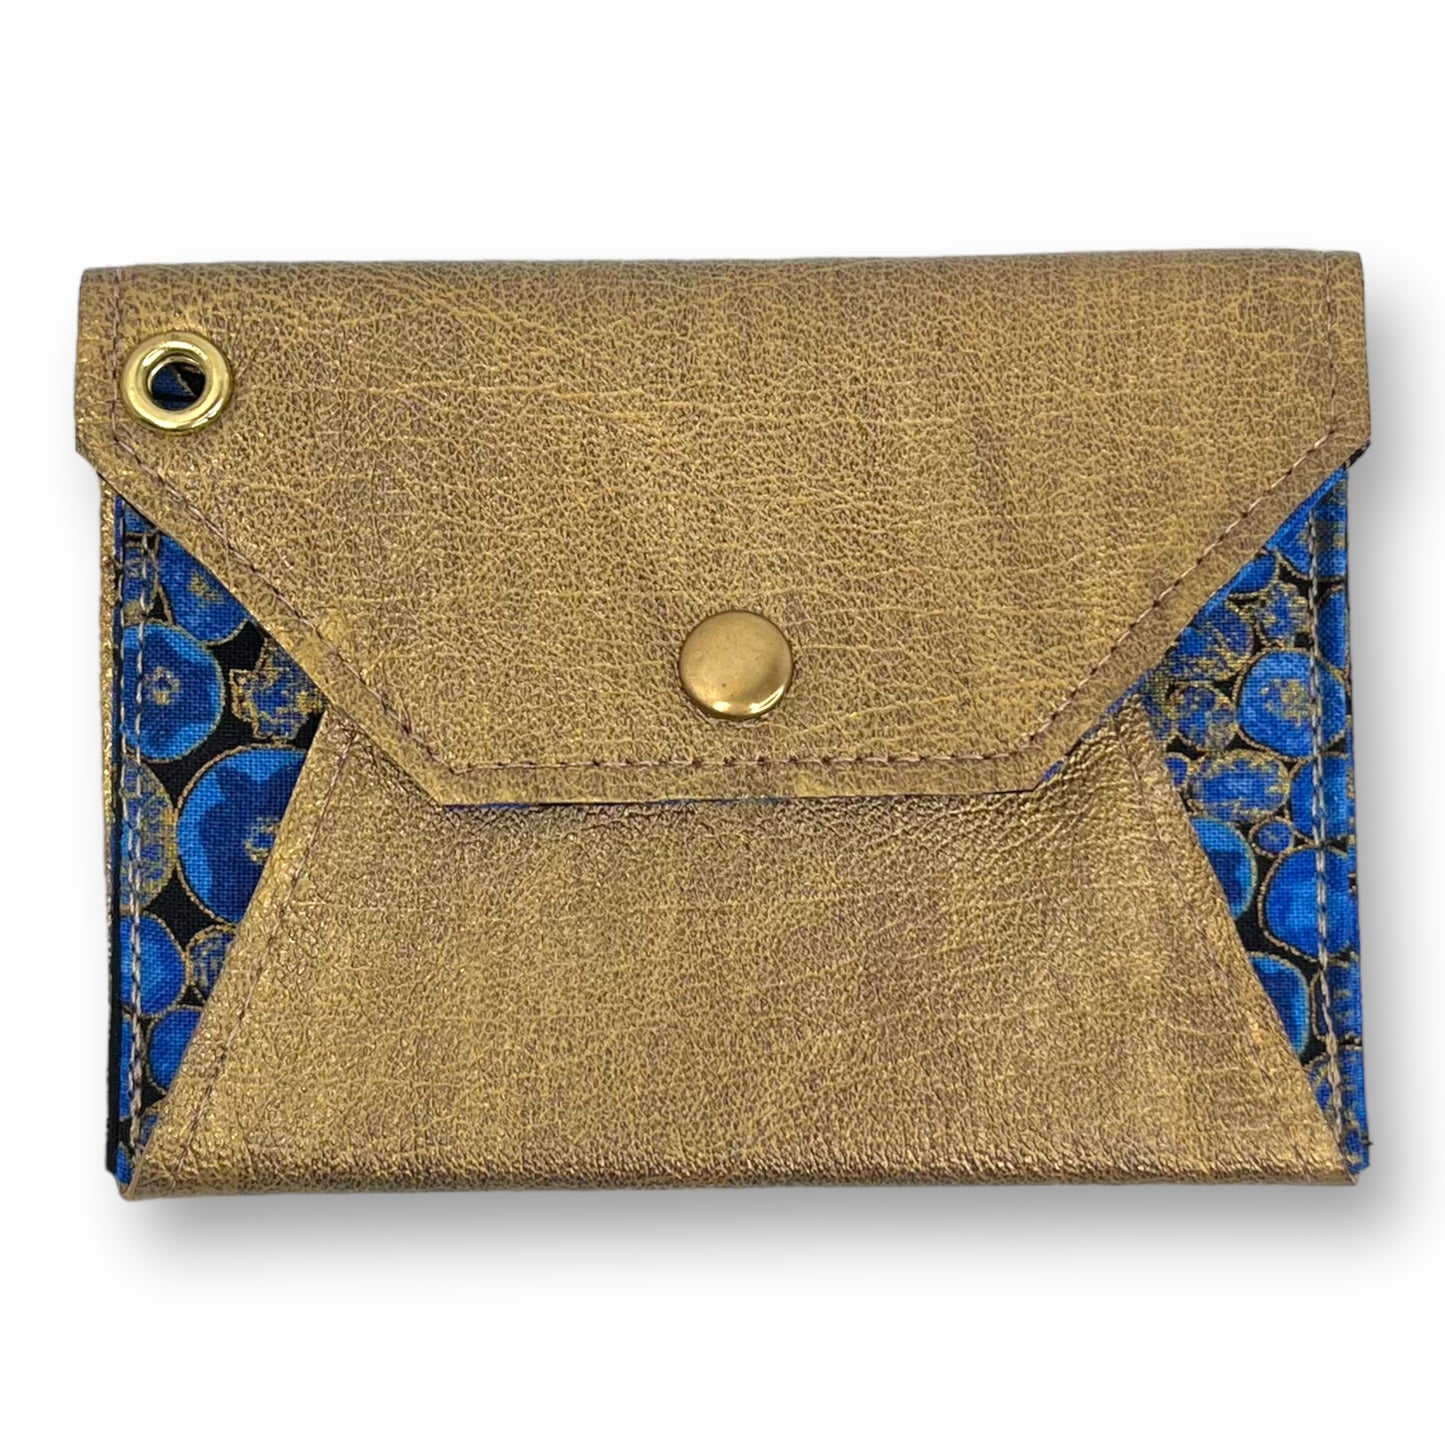 Gold & Blue Envelope Leather Wallet